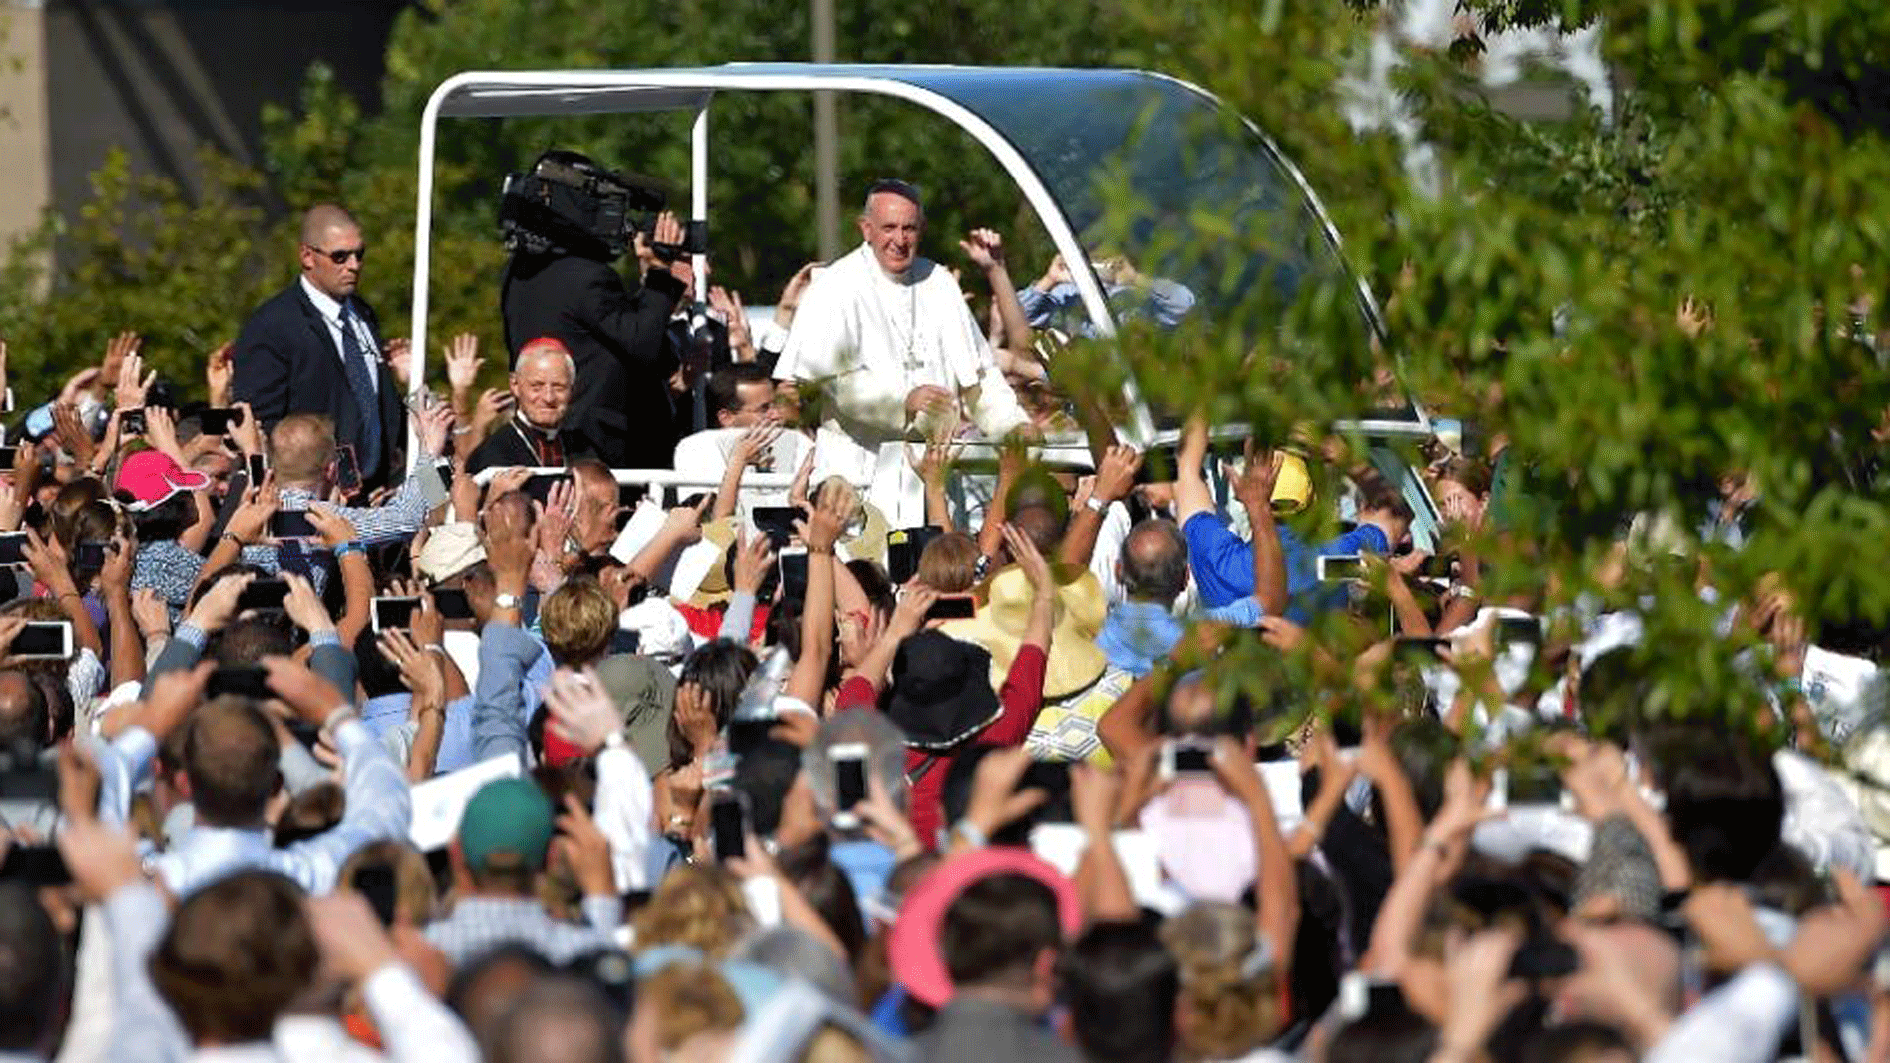 Ở khía cạnh được công chúng mến mộ, Giáo hoàng Francis đang "hưởng quy chế" của ngôi sao ca nhạc - Ảnh: AFP